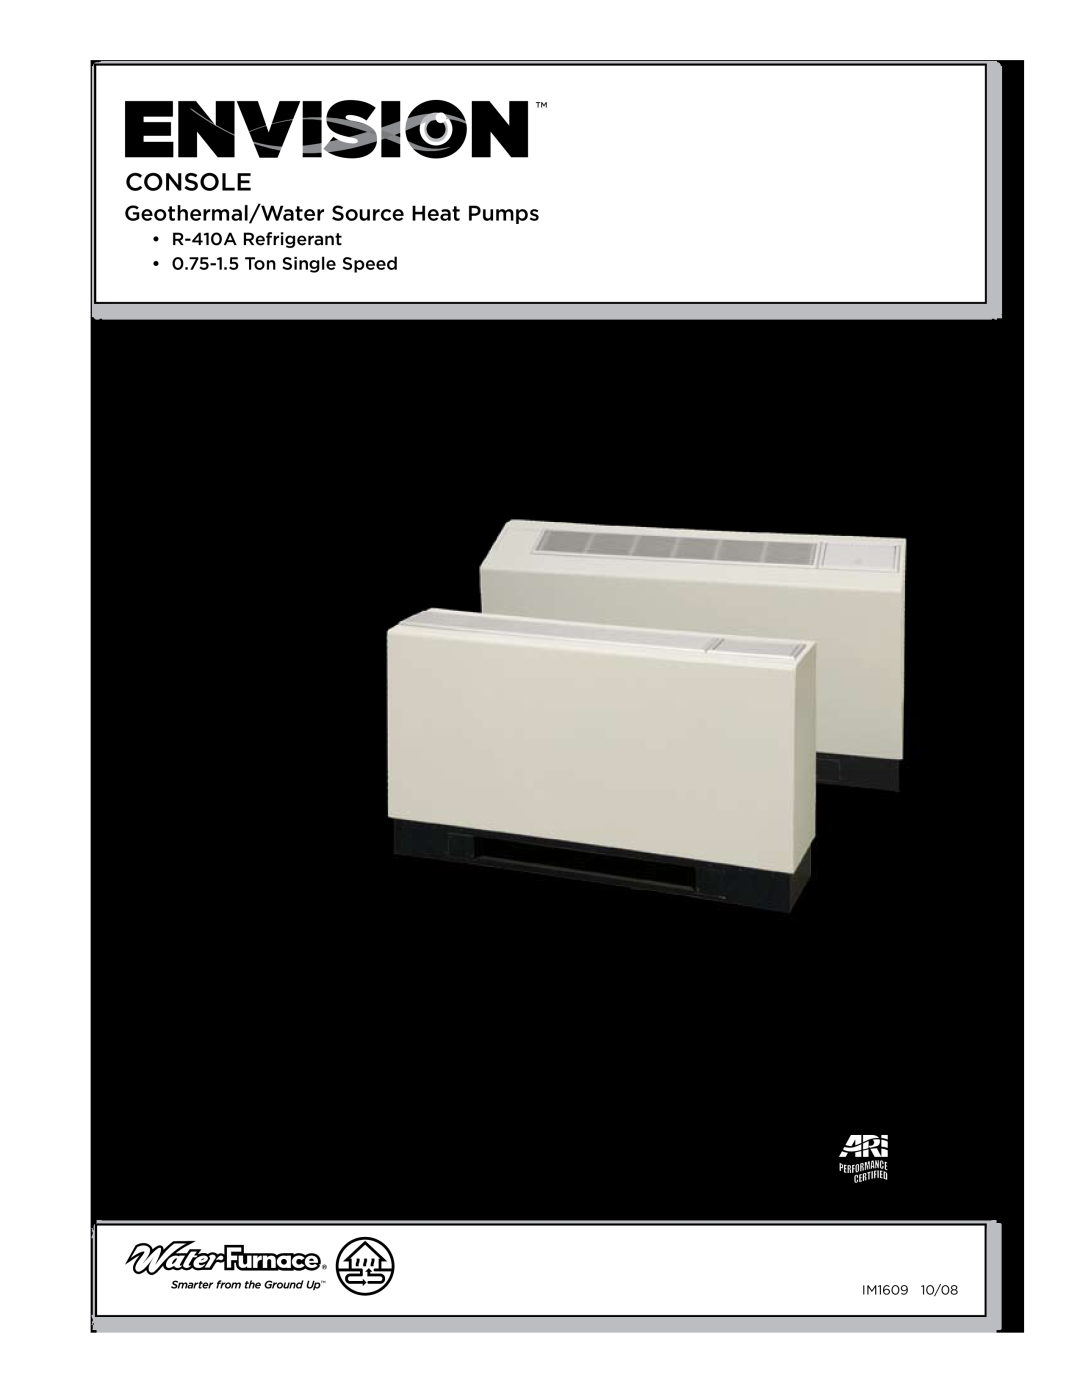 Envision Peripherals IM1609 10, IM1609 08 installation manual Envision Console Installation Manual 